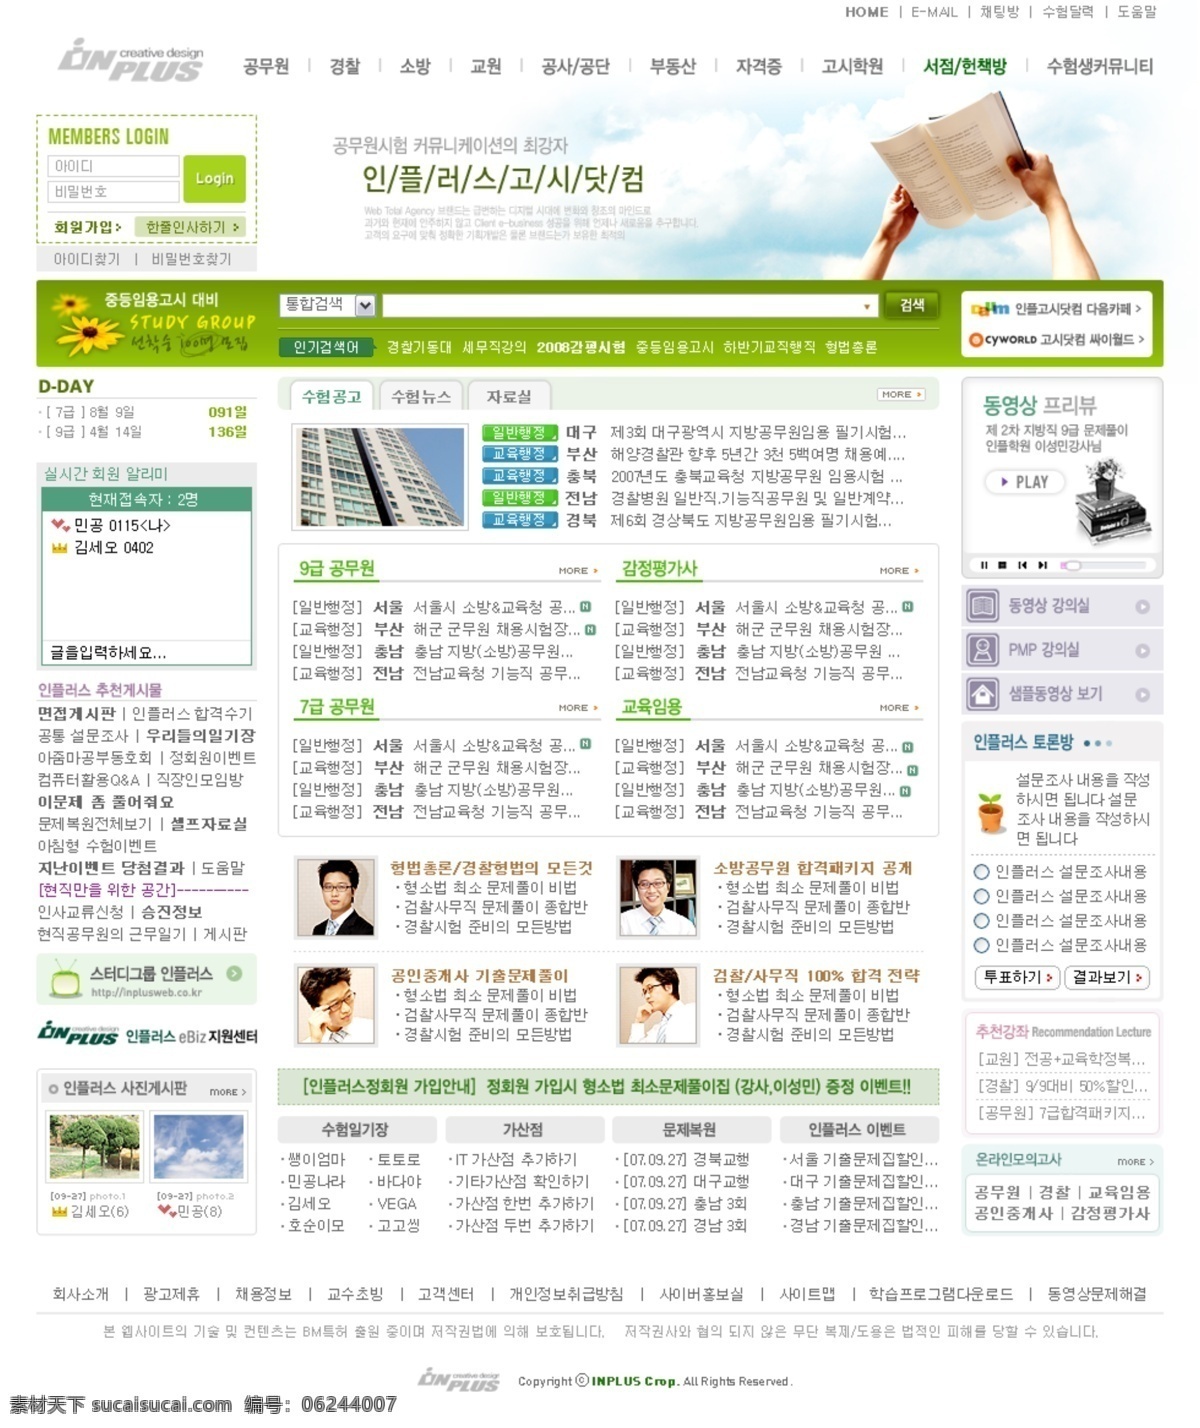 资讯 网站 门户 网页模板 网页素材 网页界面模板 网页设计